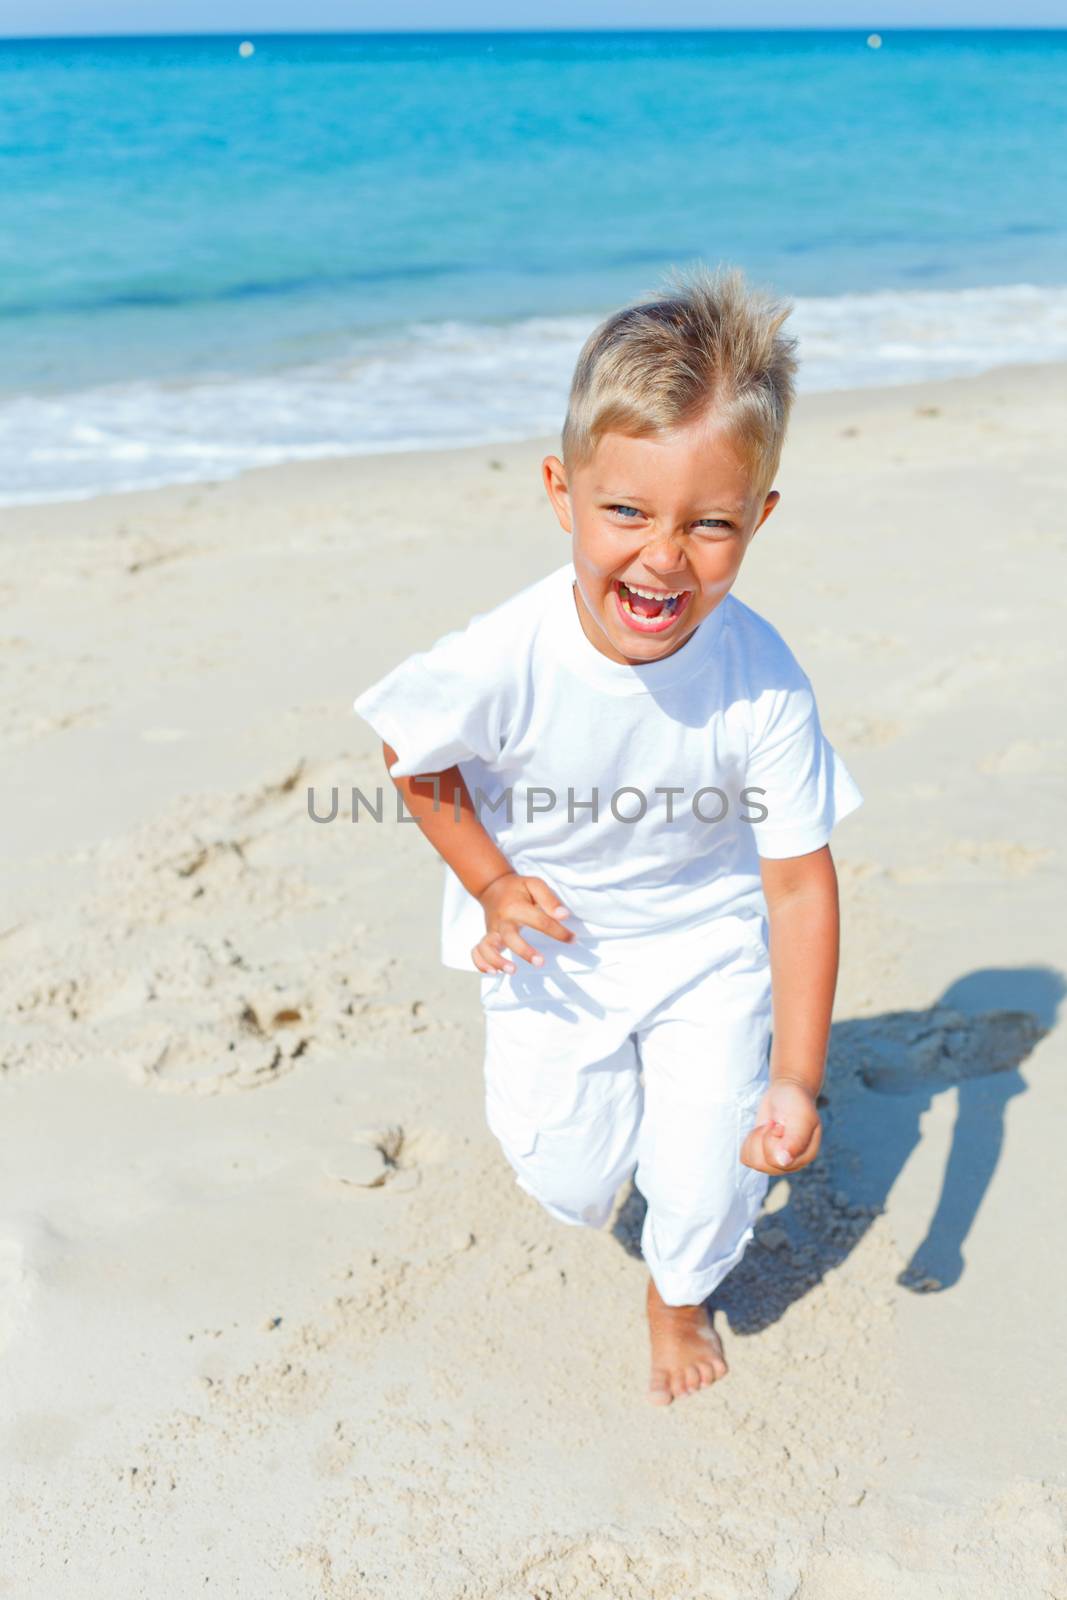 Smiling cute boy runs along the tropical beach.